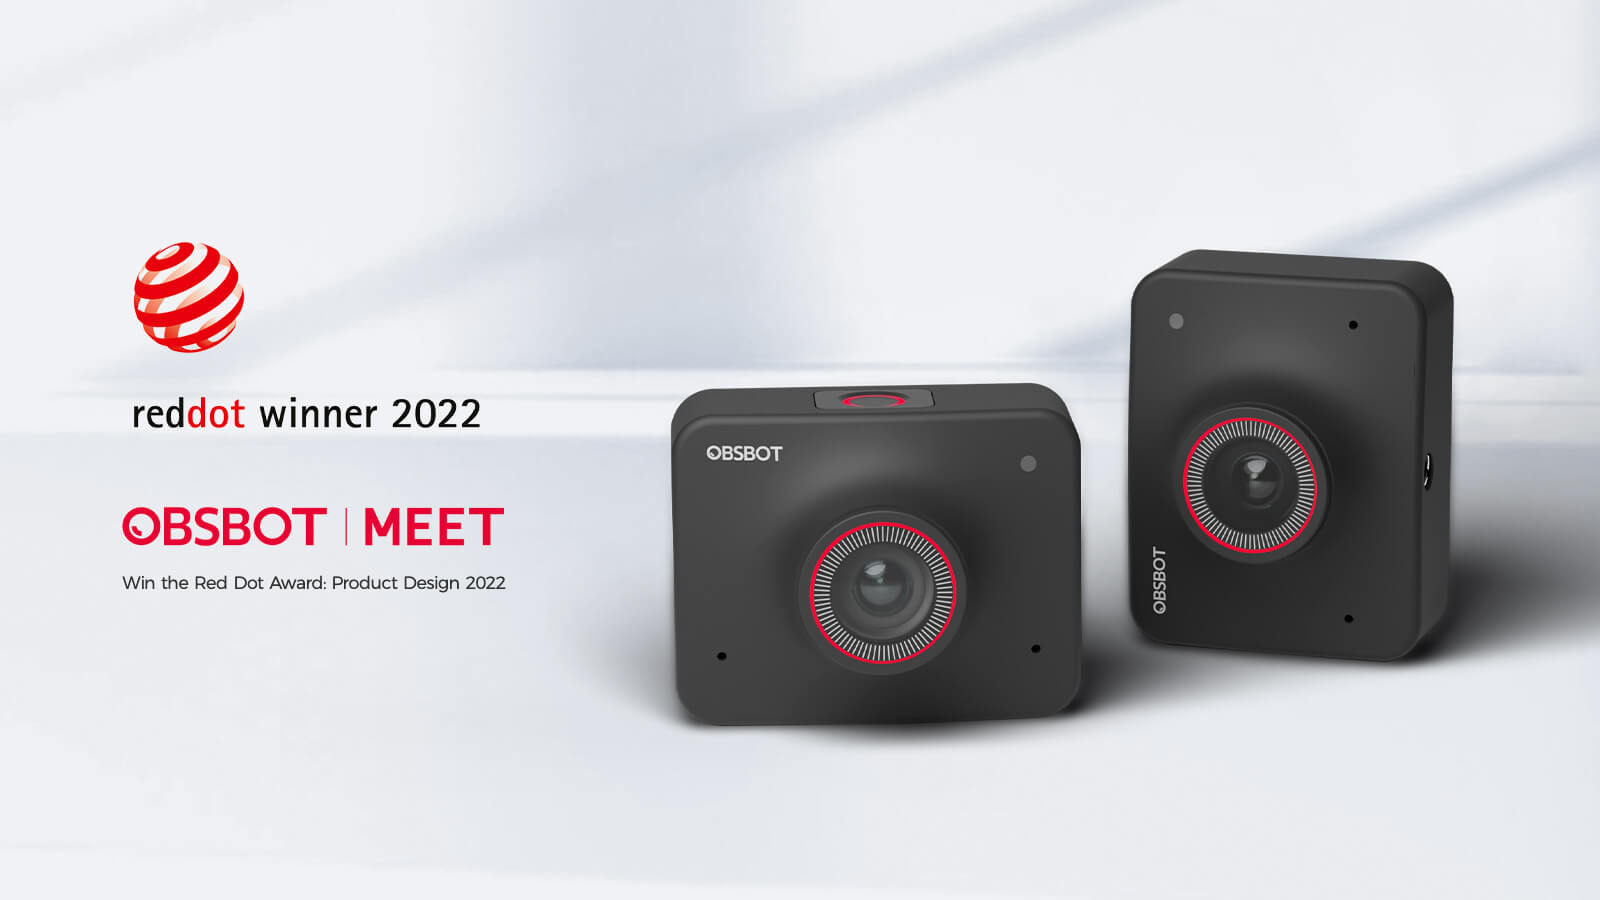 OBSBOT Meet webcam wins the 2022 Red Dot Design Award